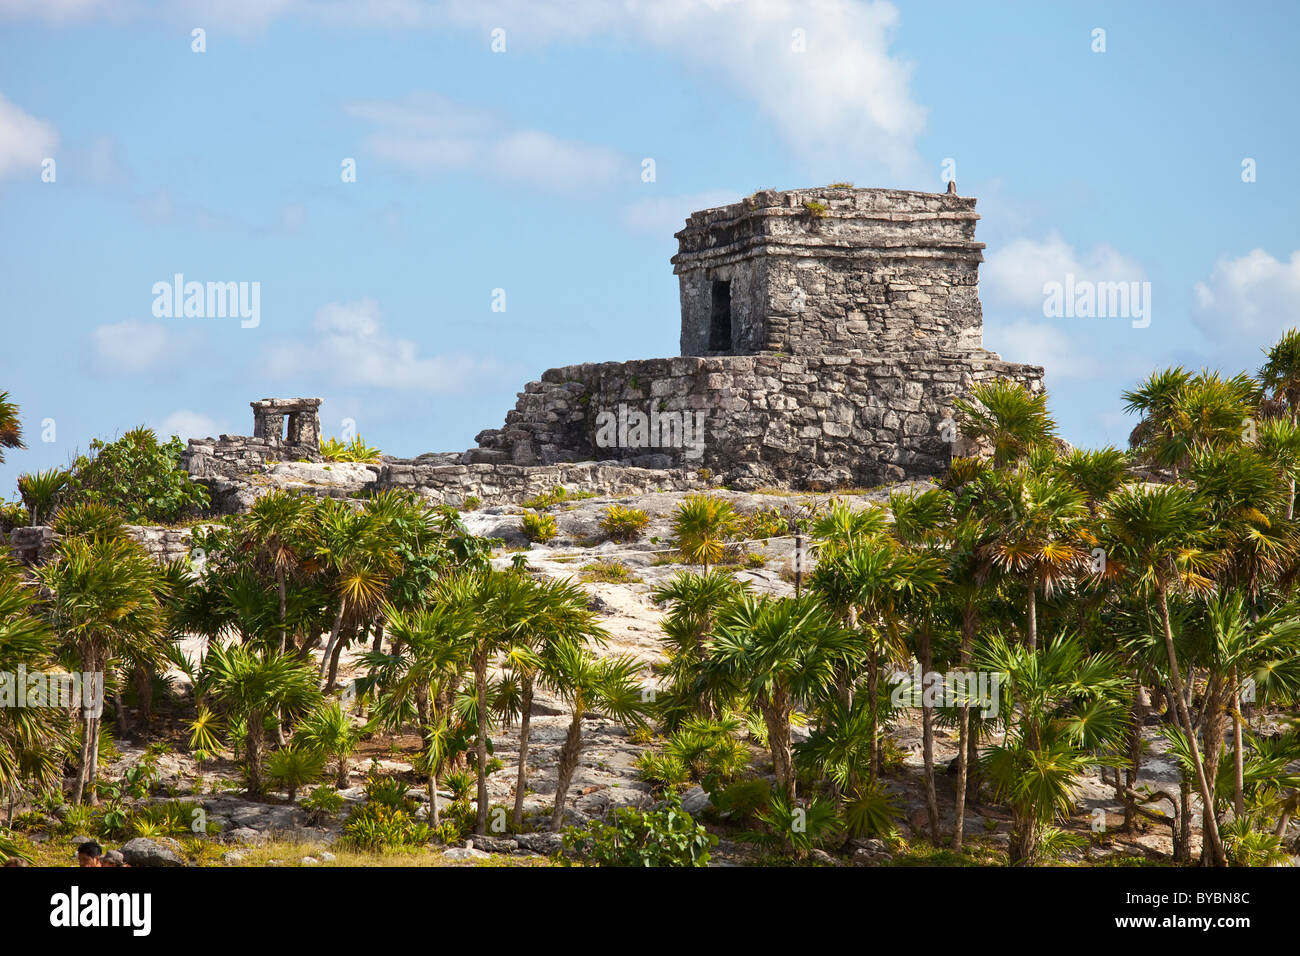 Les ruines mayas de Tulum, sur la péninsule du Yucatan, Mexique Banque D'Images